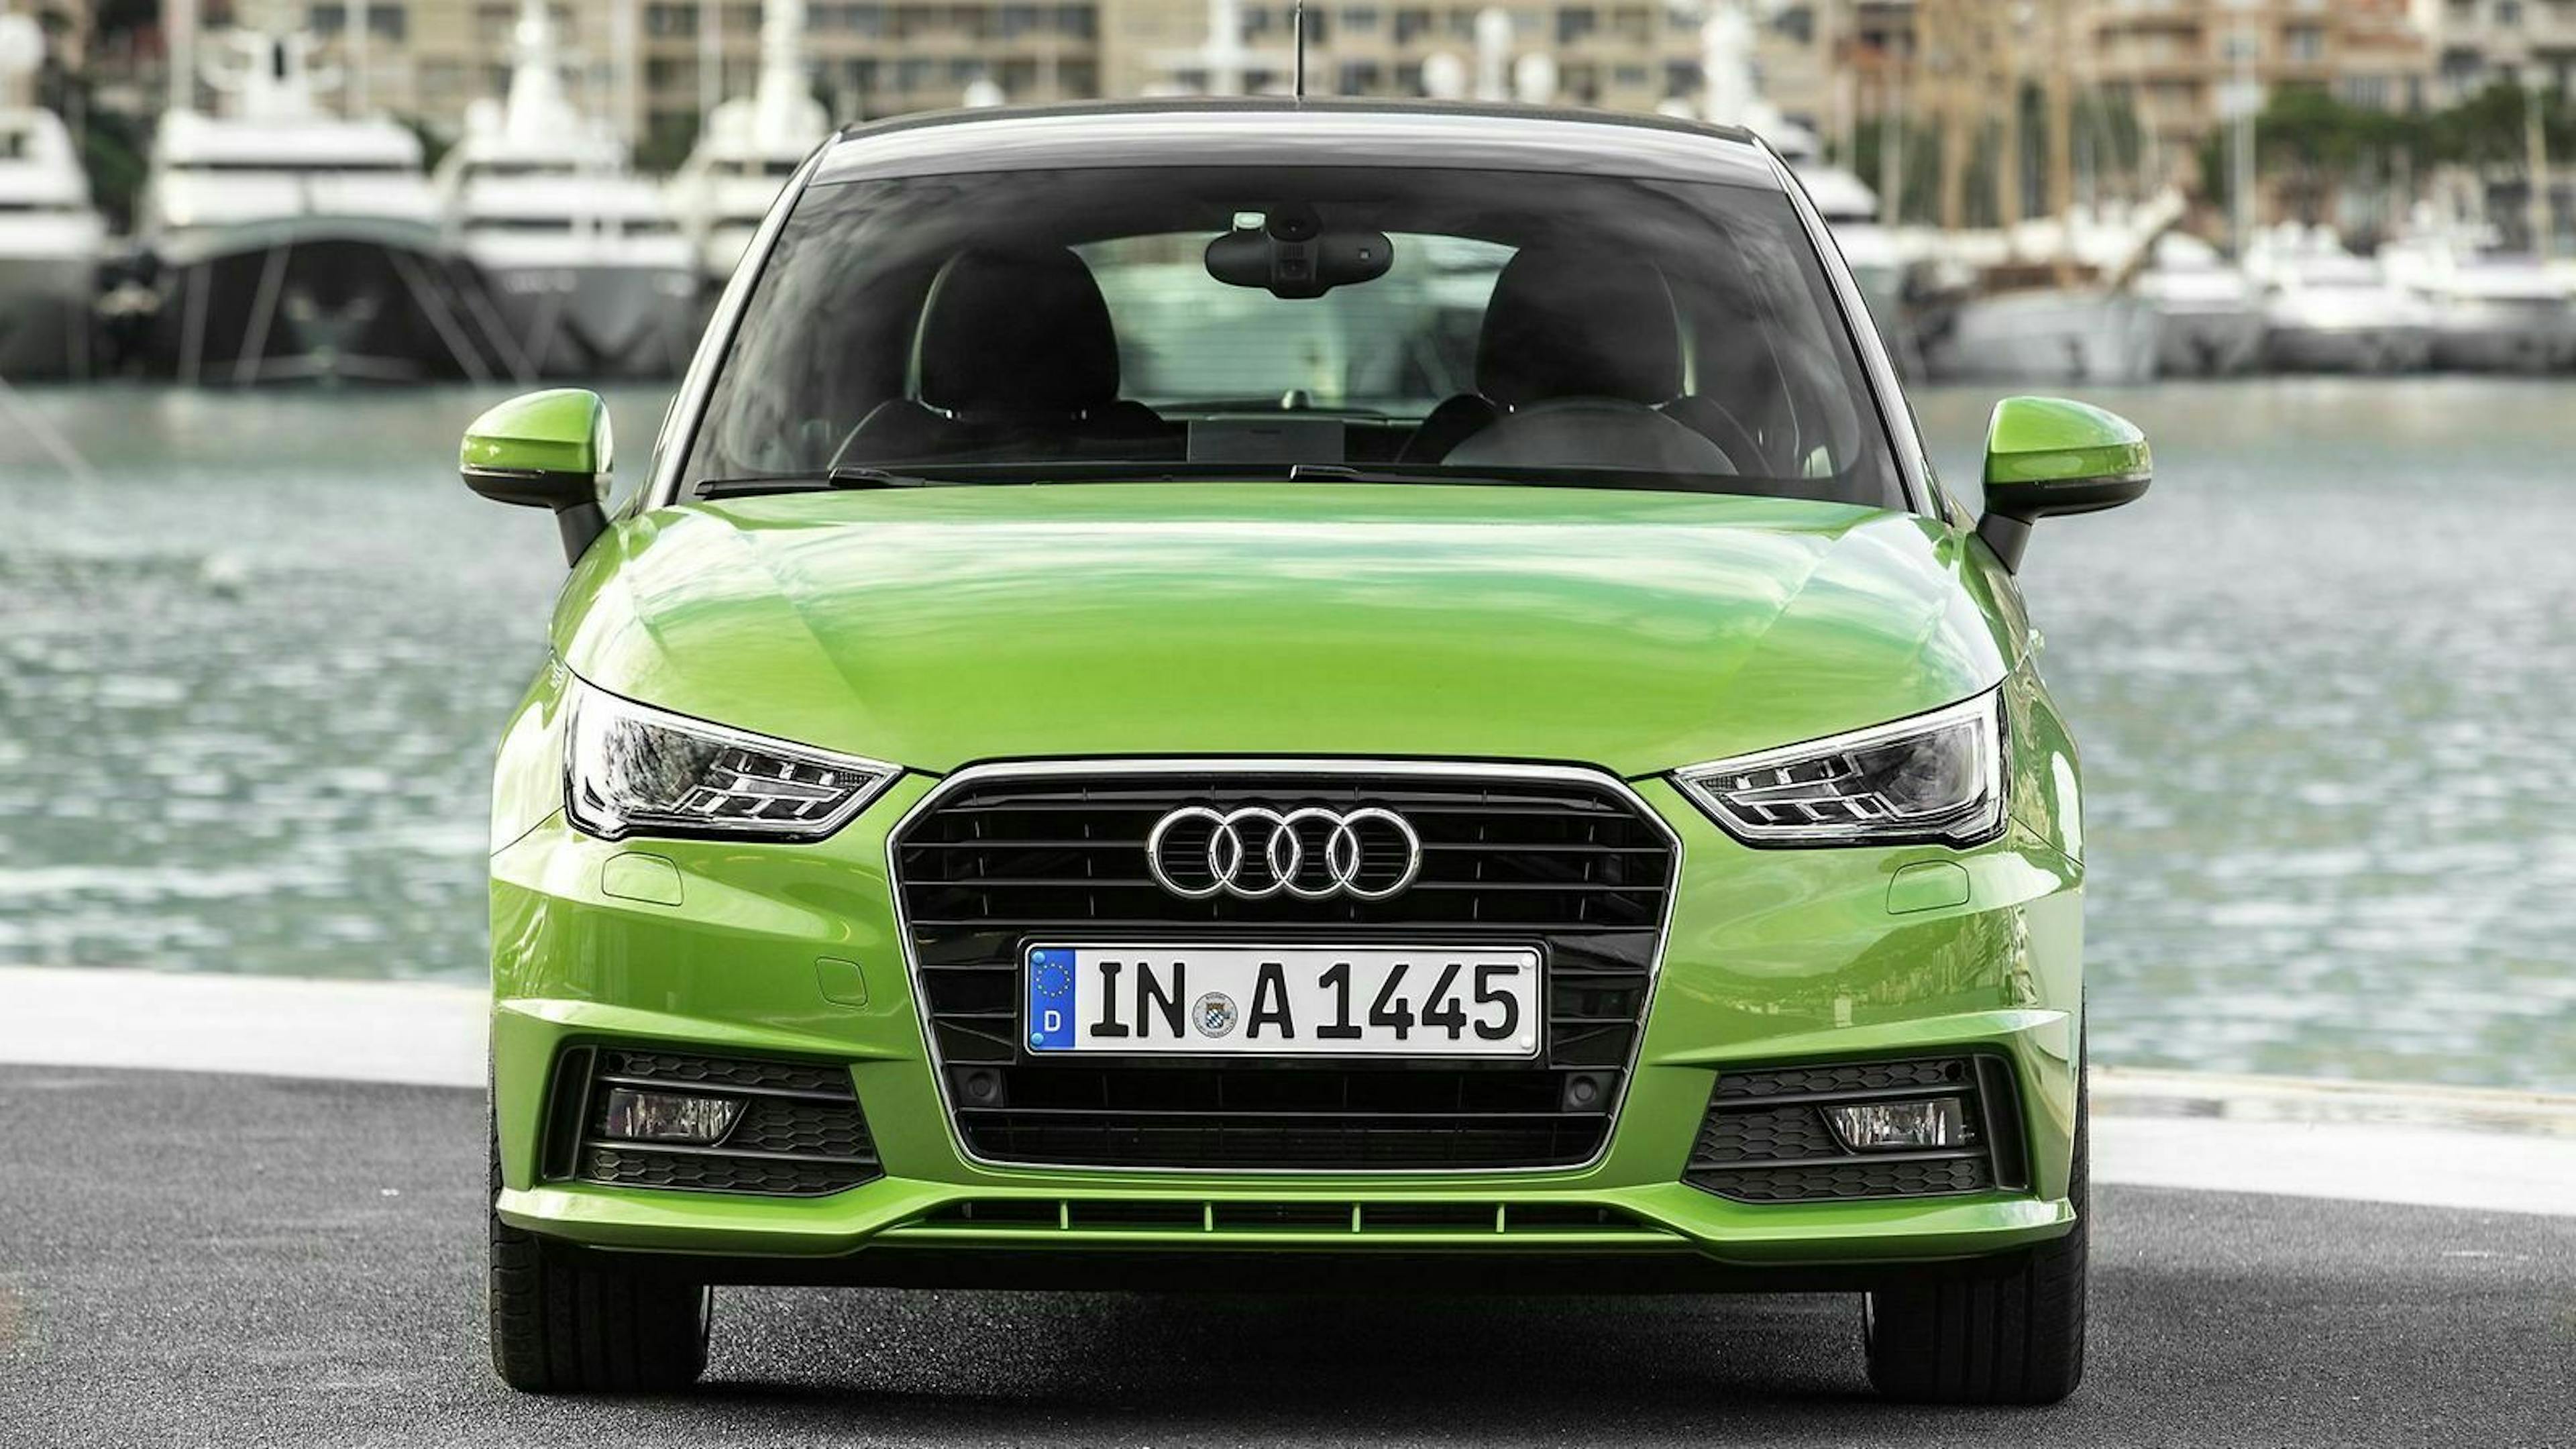 Zu sehen ist die Front des Audi A1 Sportback. Er ist in der Farbe 'Java Green' lackiert